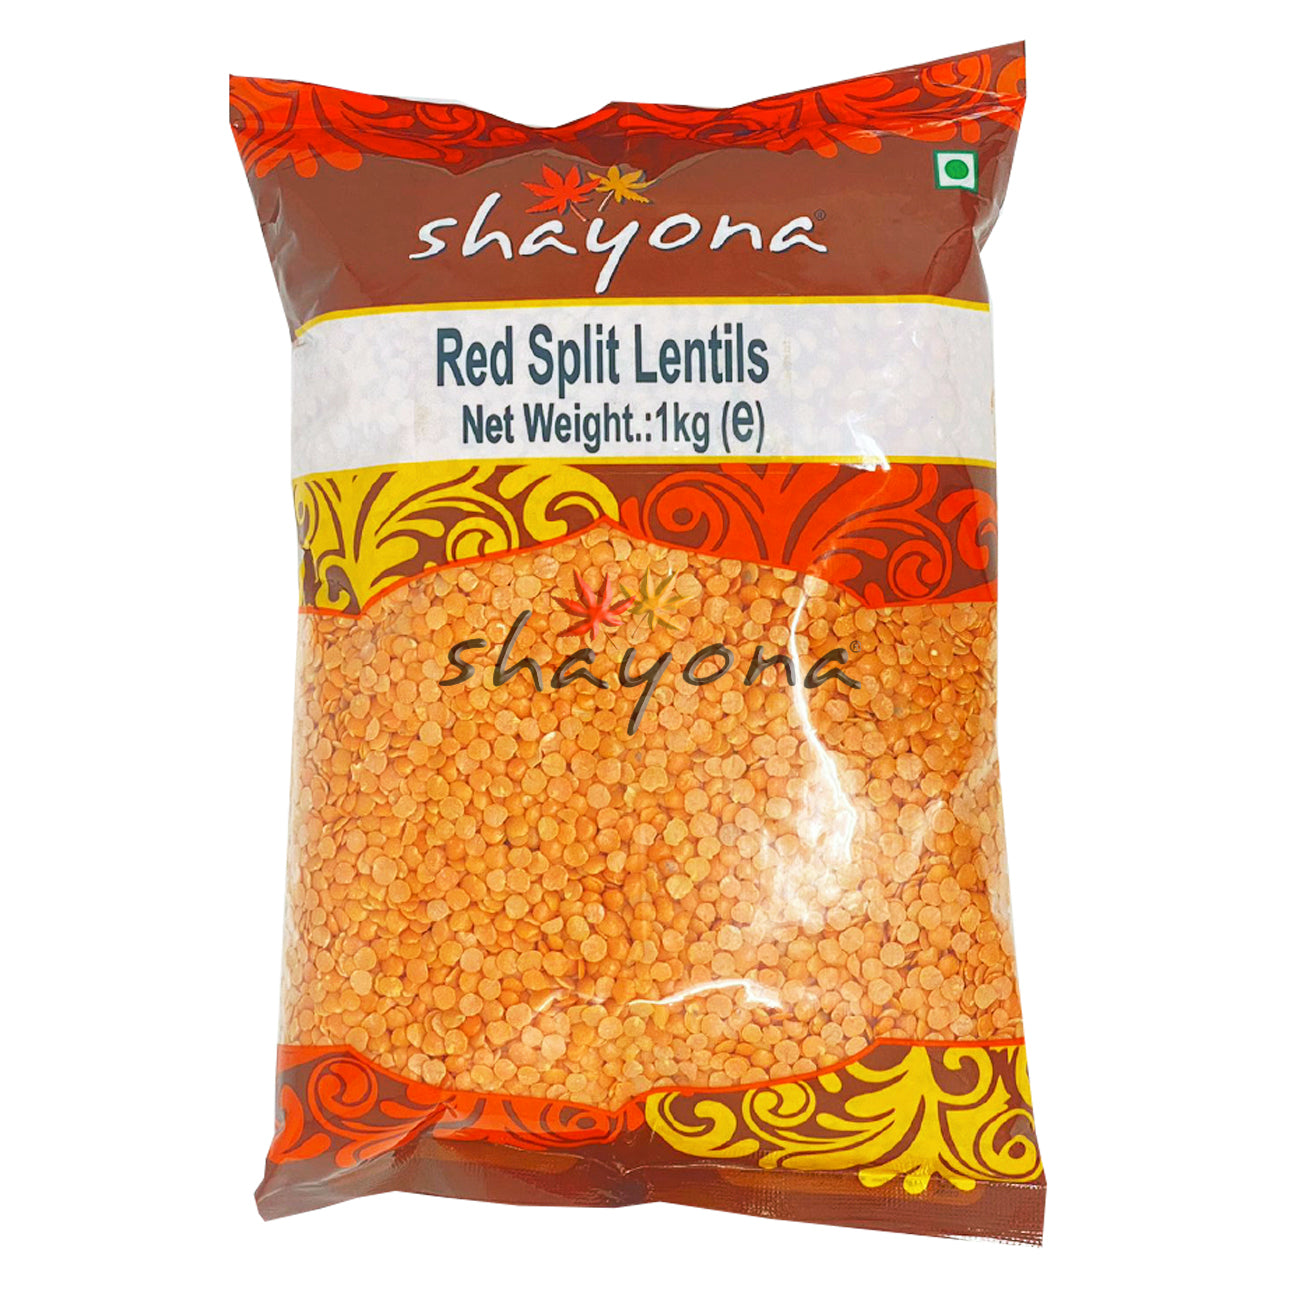 Shayona Red Split Lentils